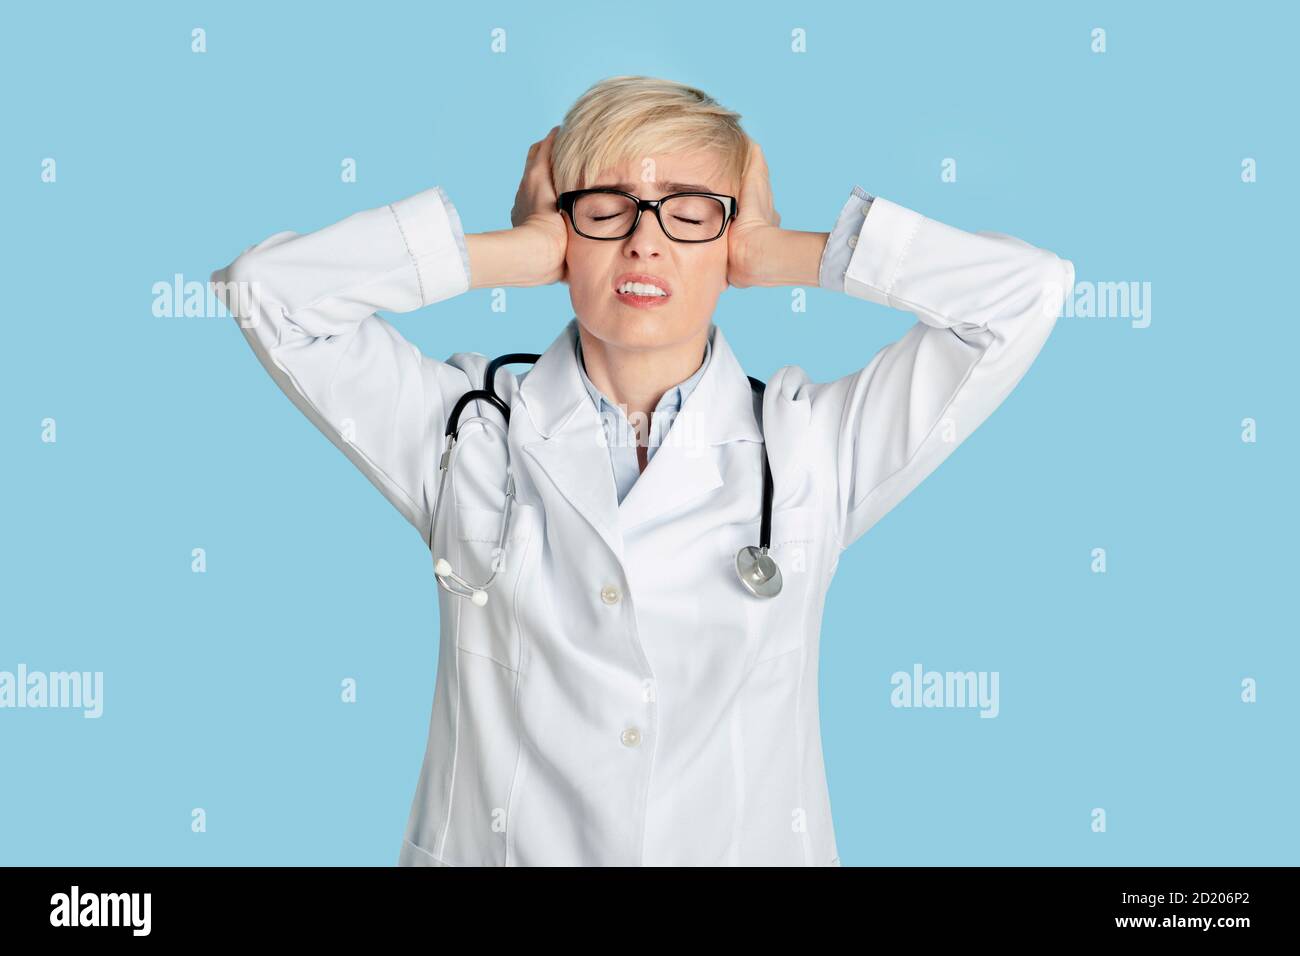 Problèmes médicaux, surtravail ou coronacrisis. Triste femme médecin en manteau blanc avec stéthoscope Banque D'Images